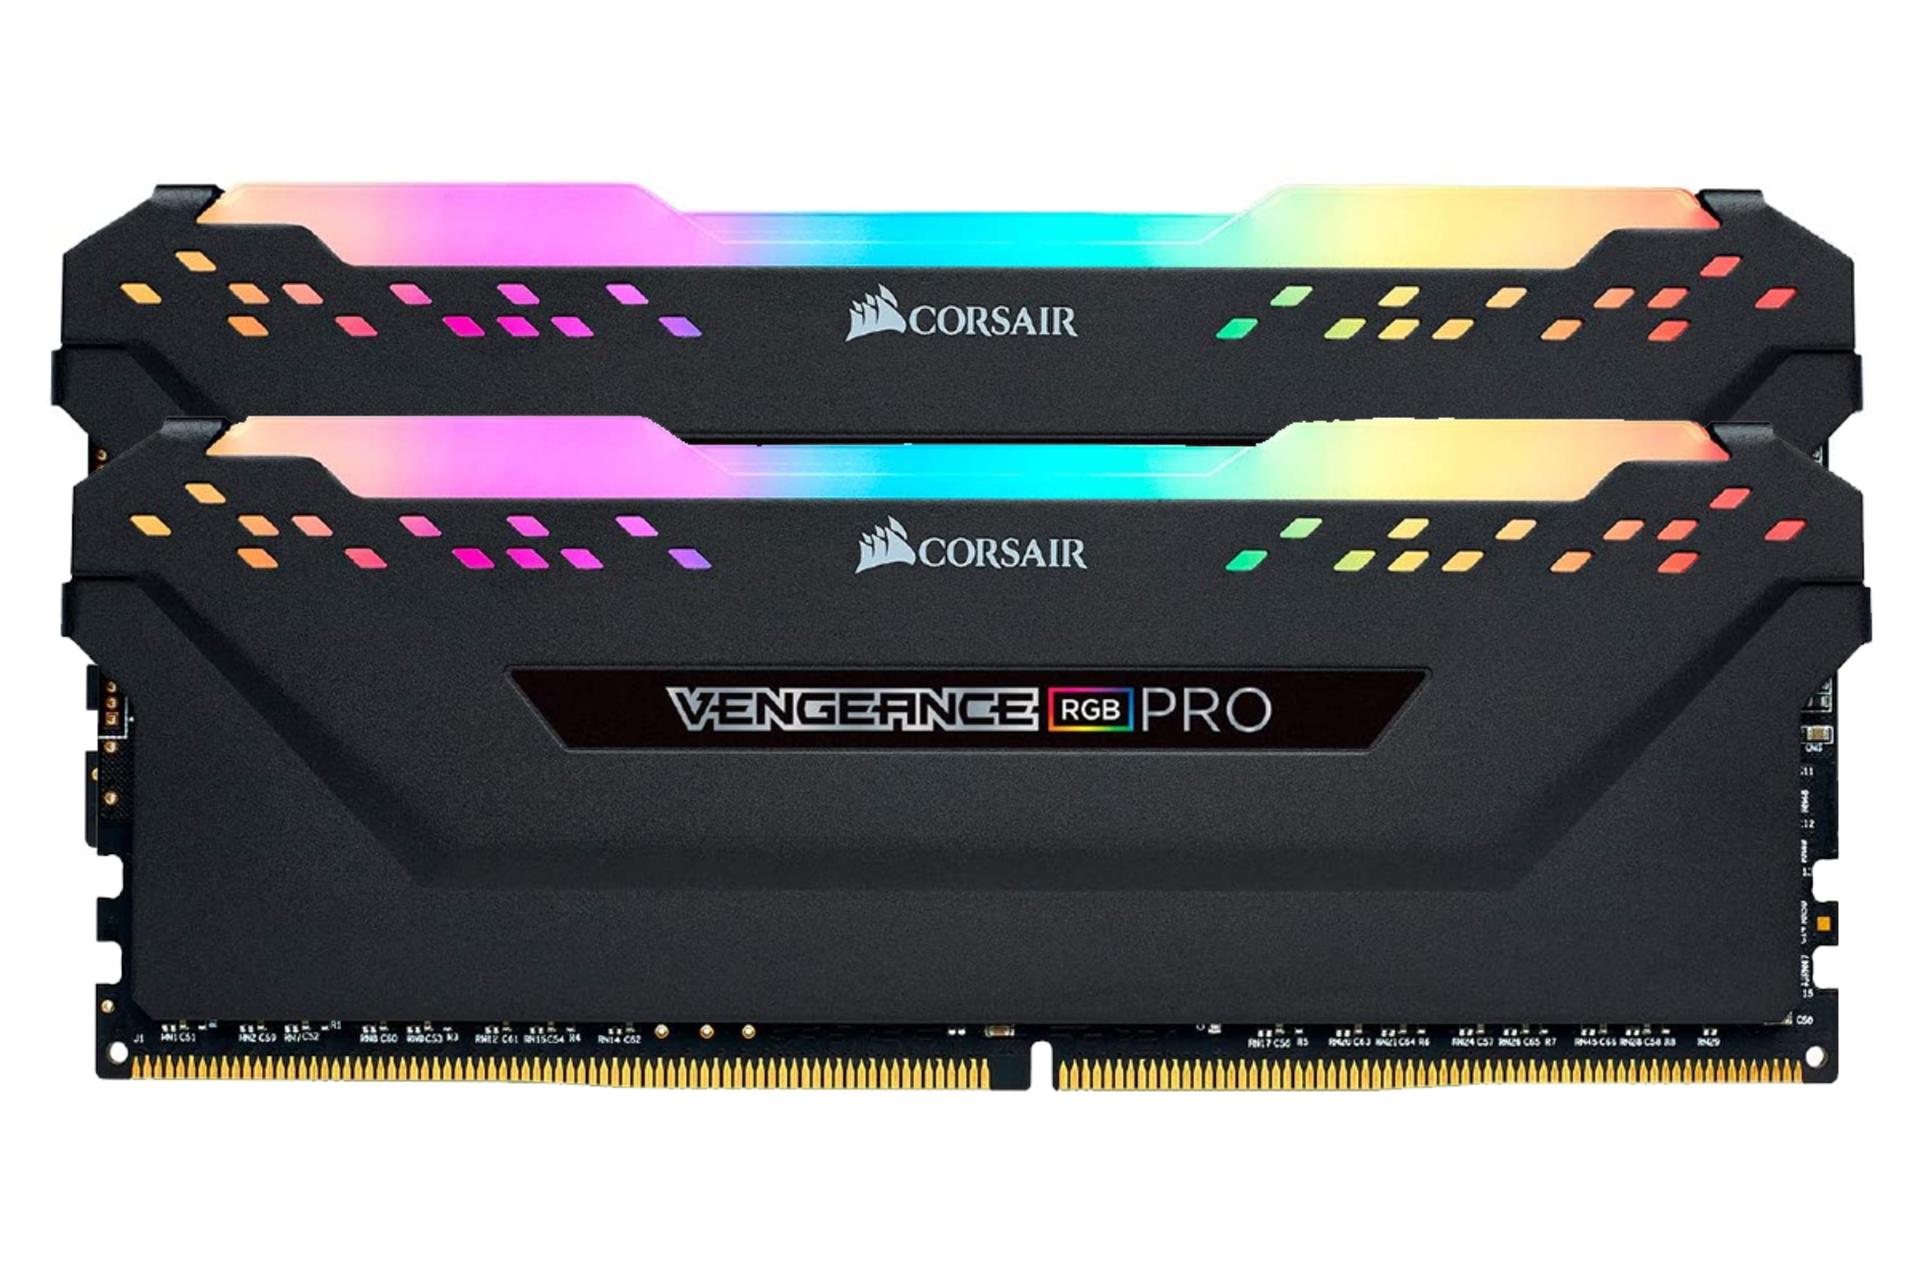 نمای جلو حافظه رم کورسیر VENGEANCE RGB PRO ظرفیت 16 گیگابایت (2x8) از نوع DDR4-3000